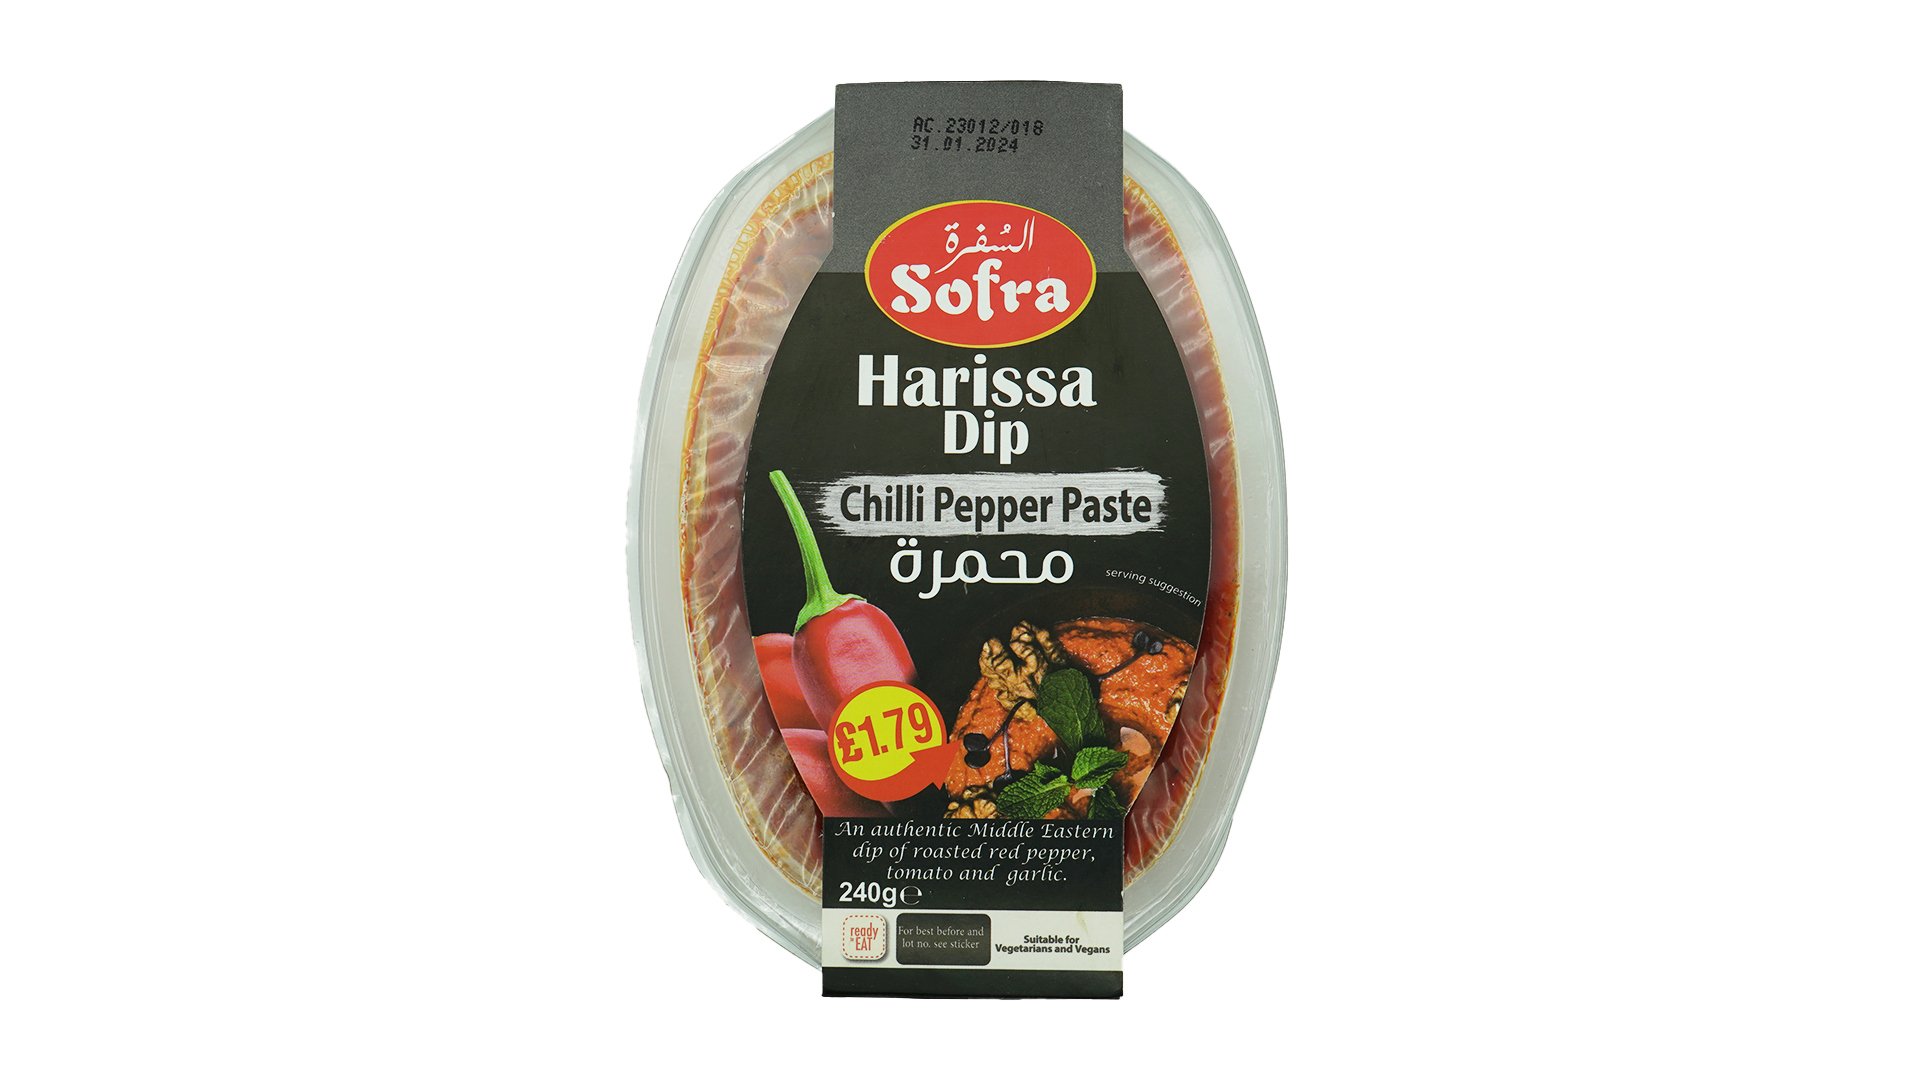 Sofra harissa dip chilli pepper paste 240g 1